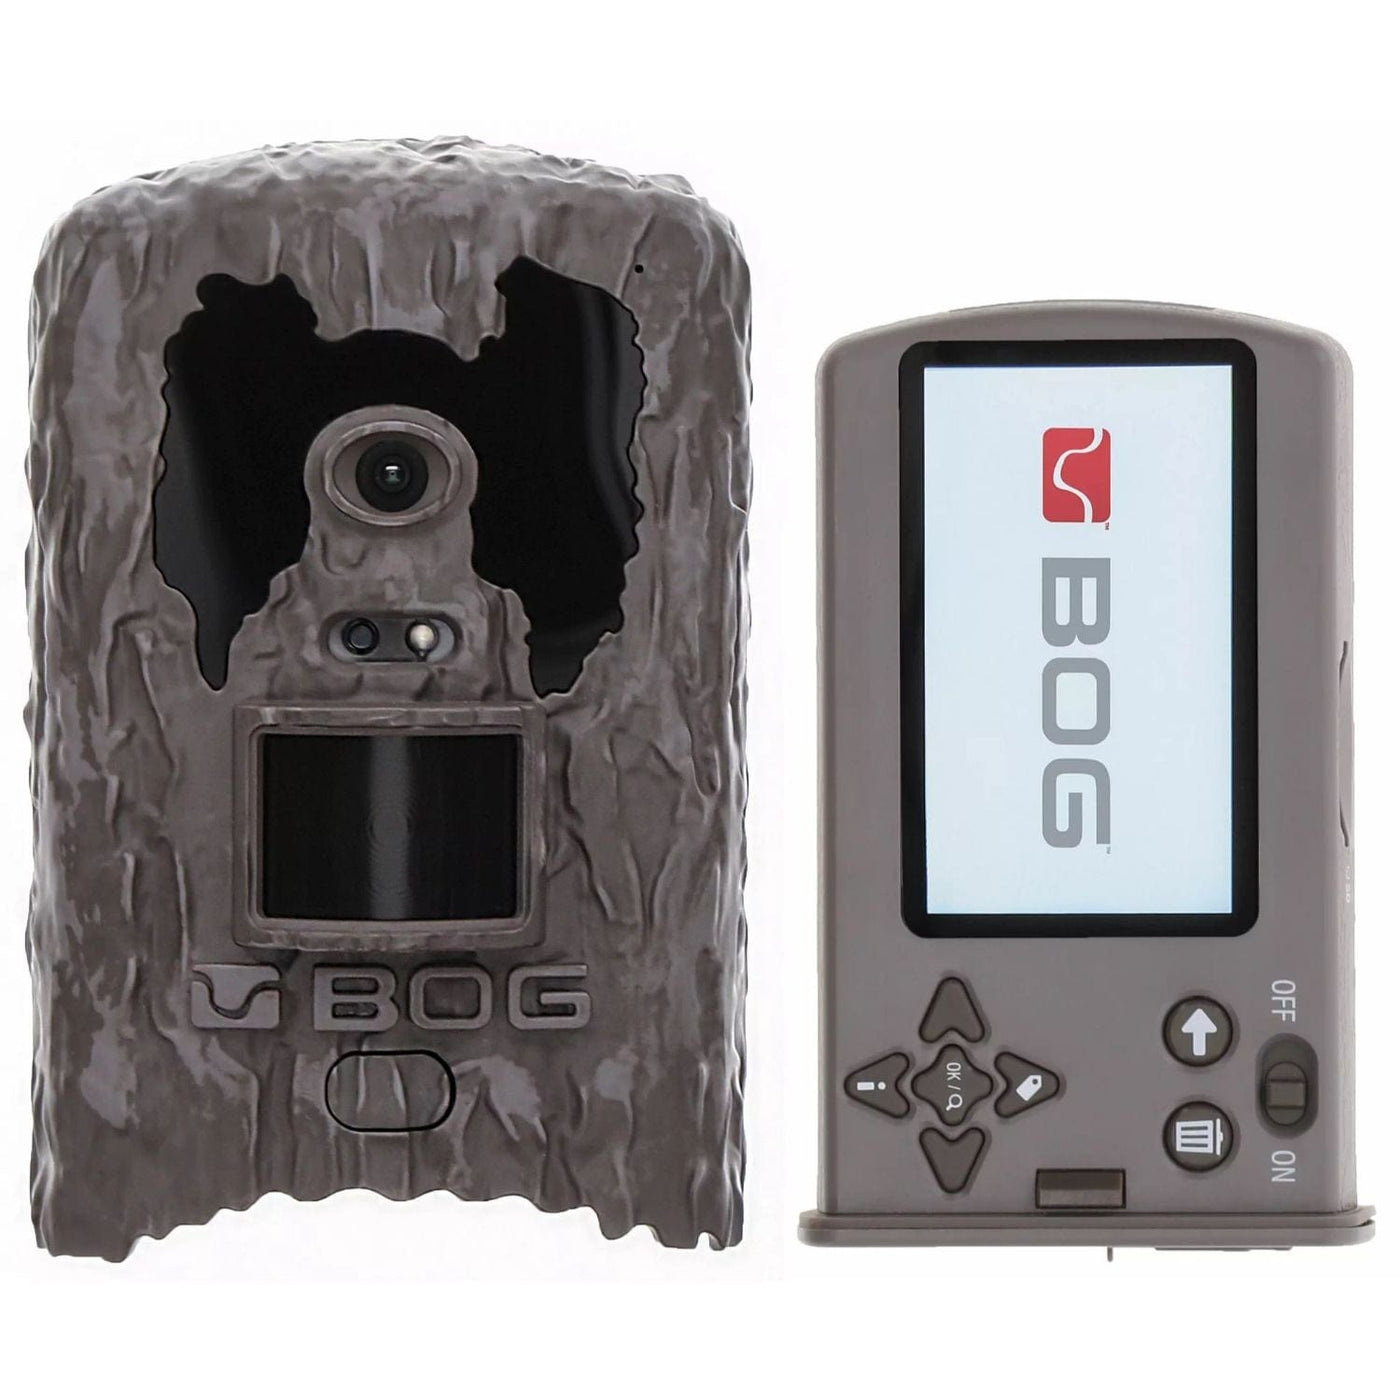 Bog-Pod Bog Clandestine 18MP Game Camera Hunting